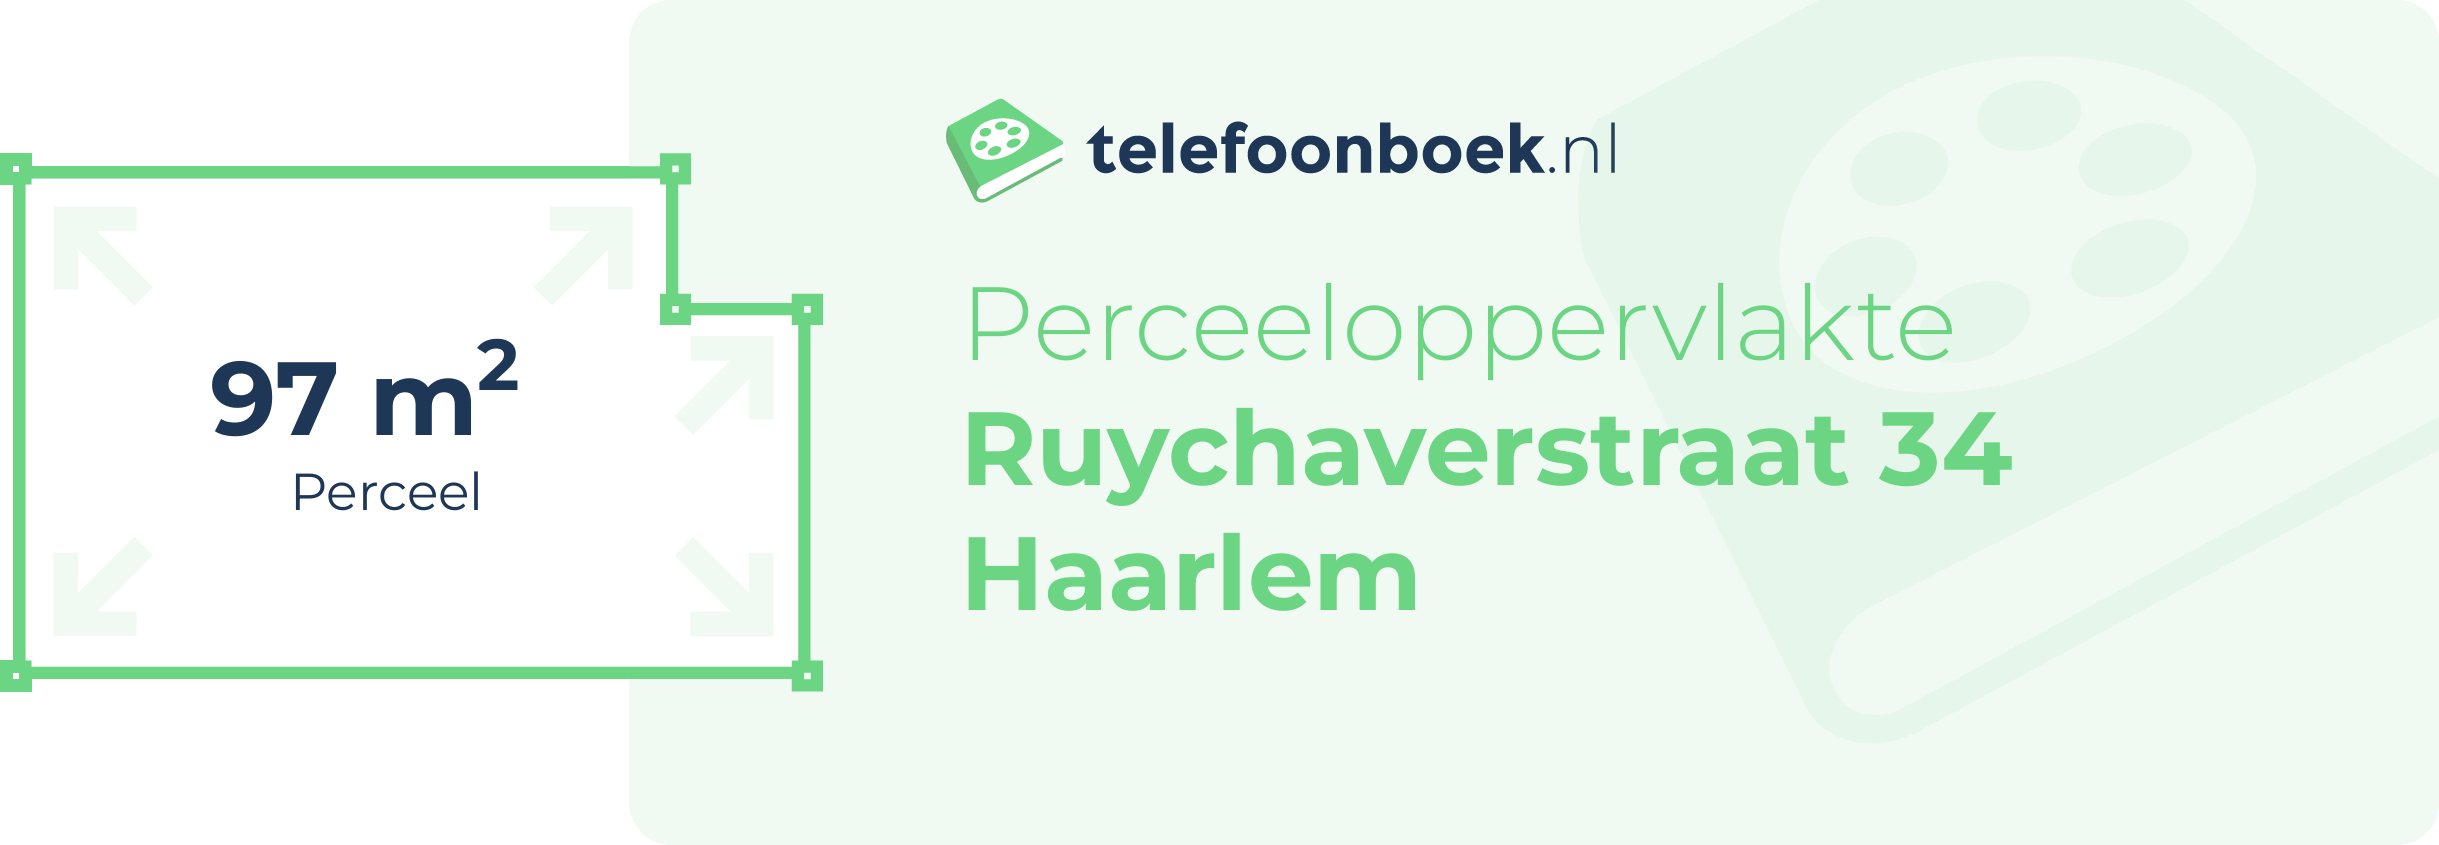 Perceeloppervlakte Ruychaverstraat 34 Haarlem